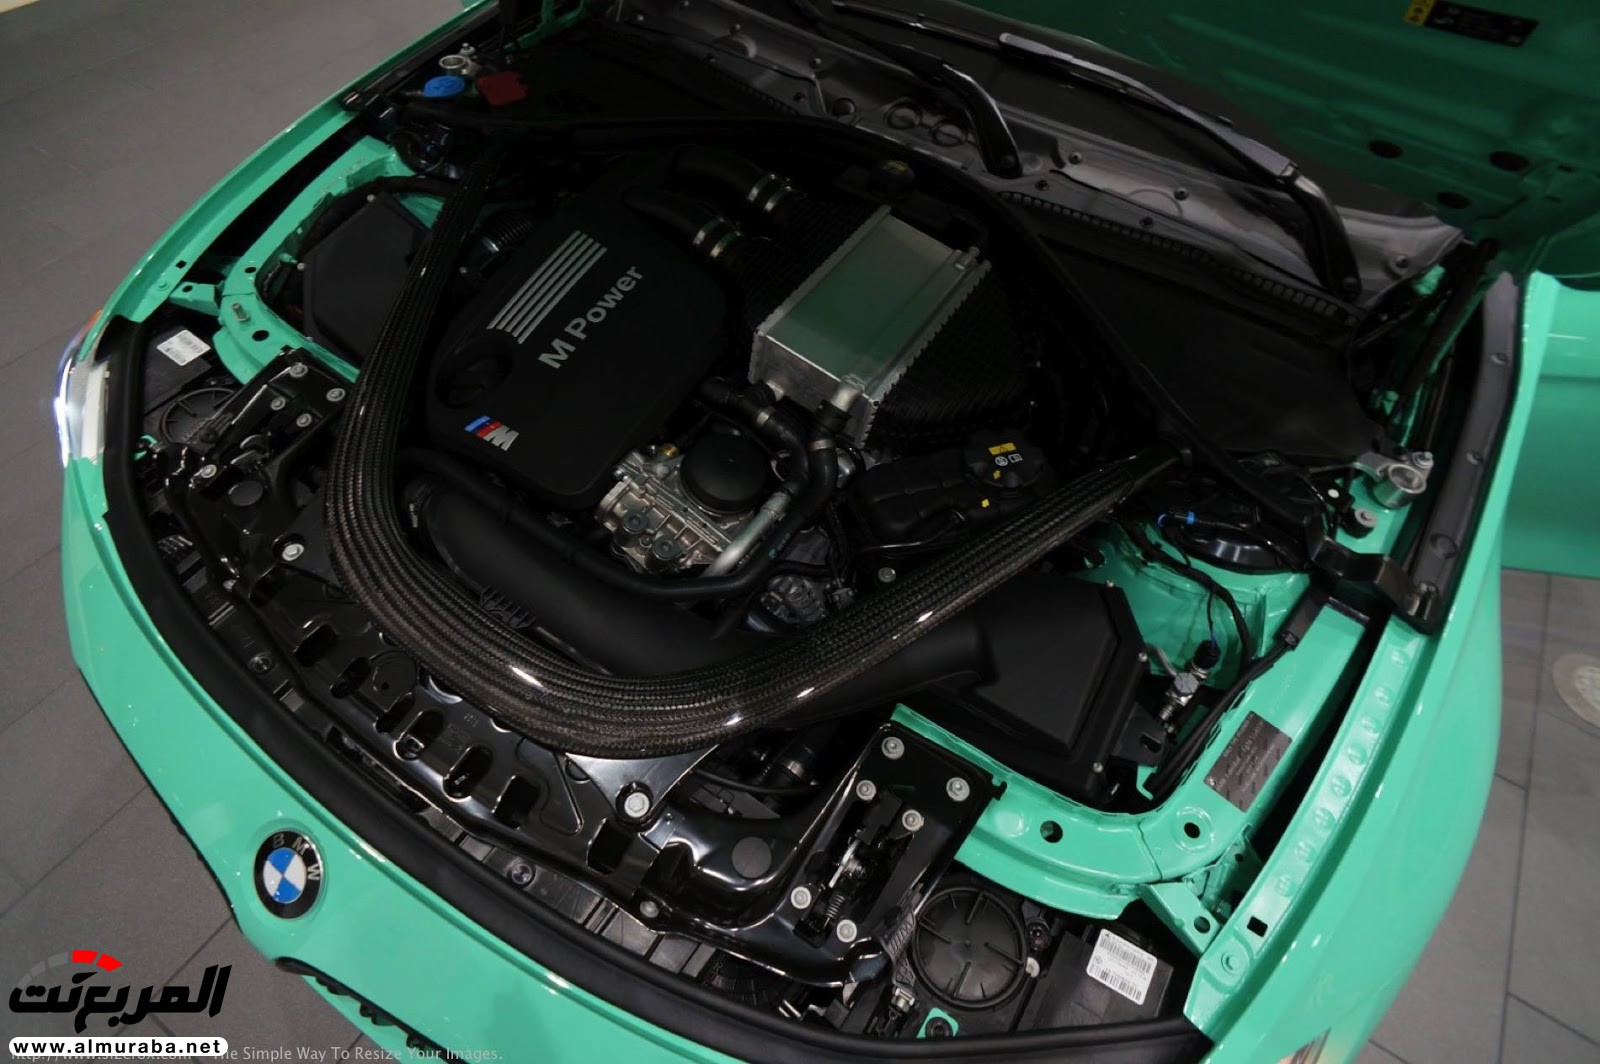 "بالصور" شاهد "بي إم دبليو" F80 M3 الخاصة بطلاء النعناع الأخضر BMW 116